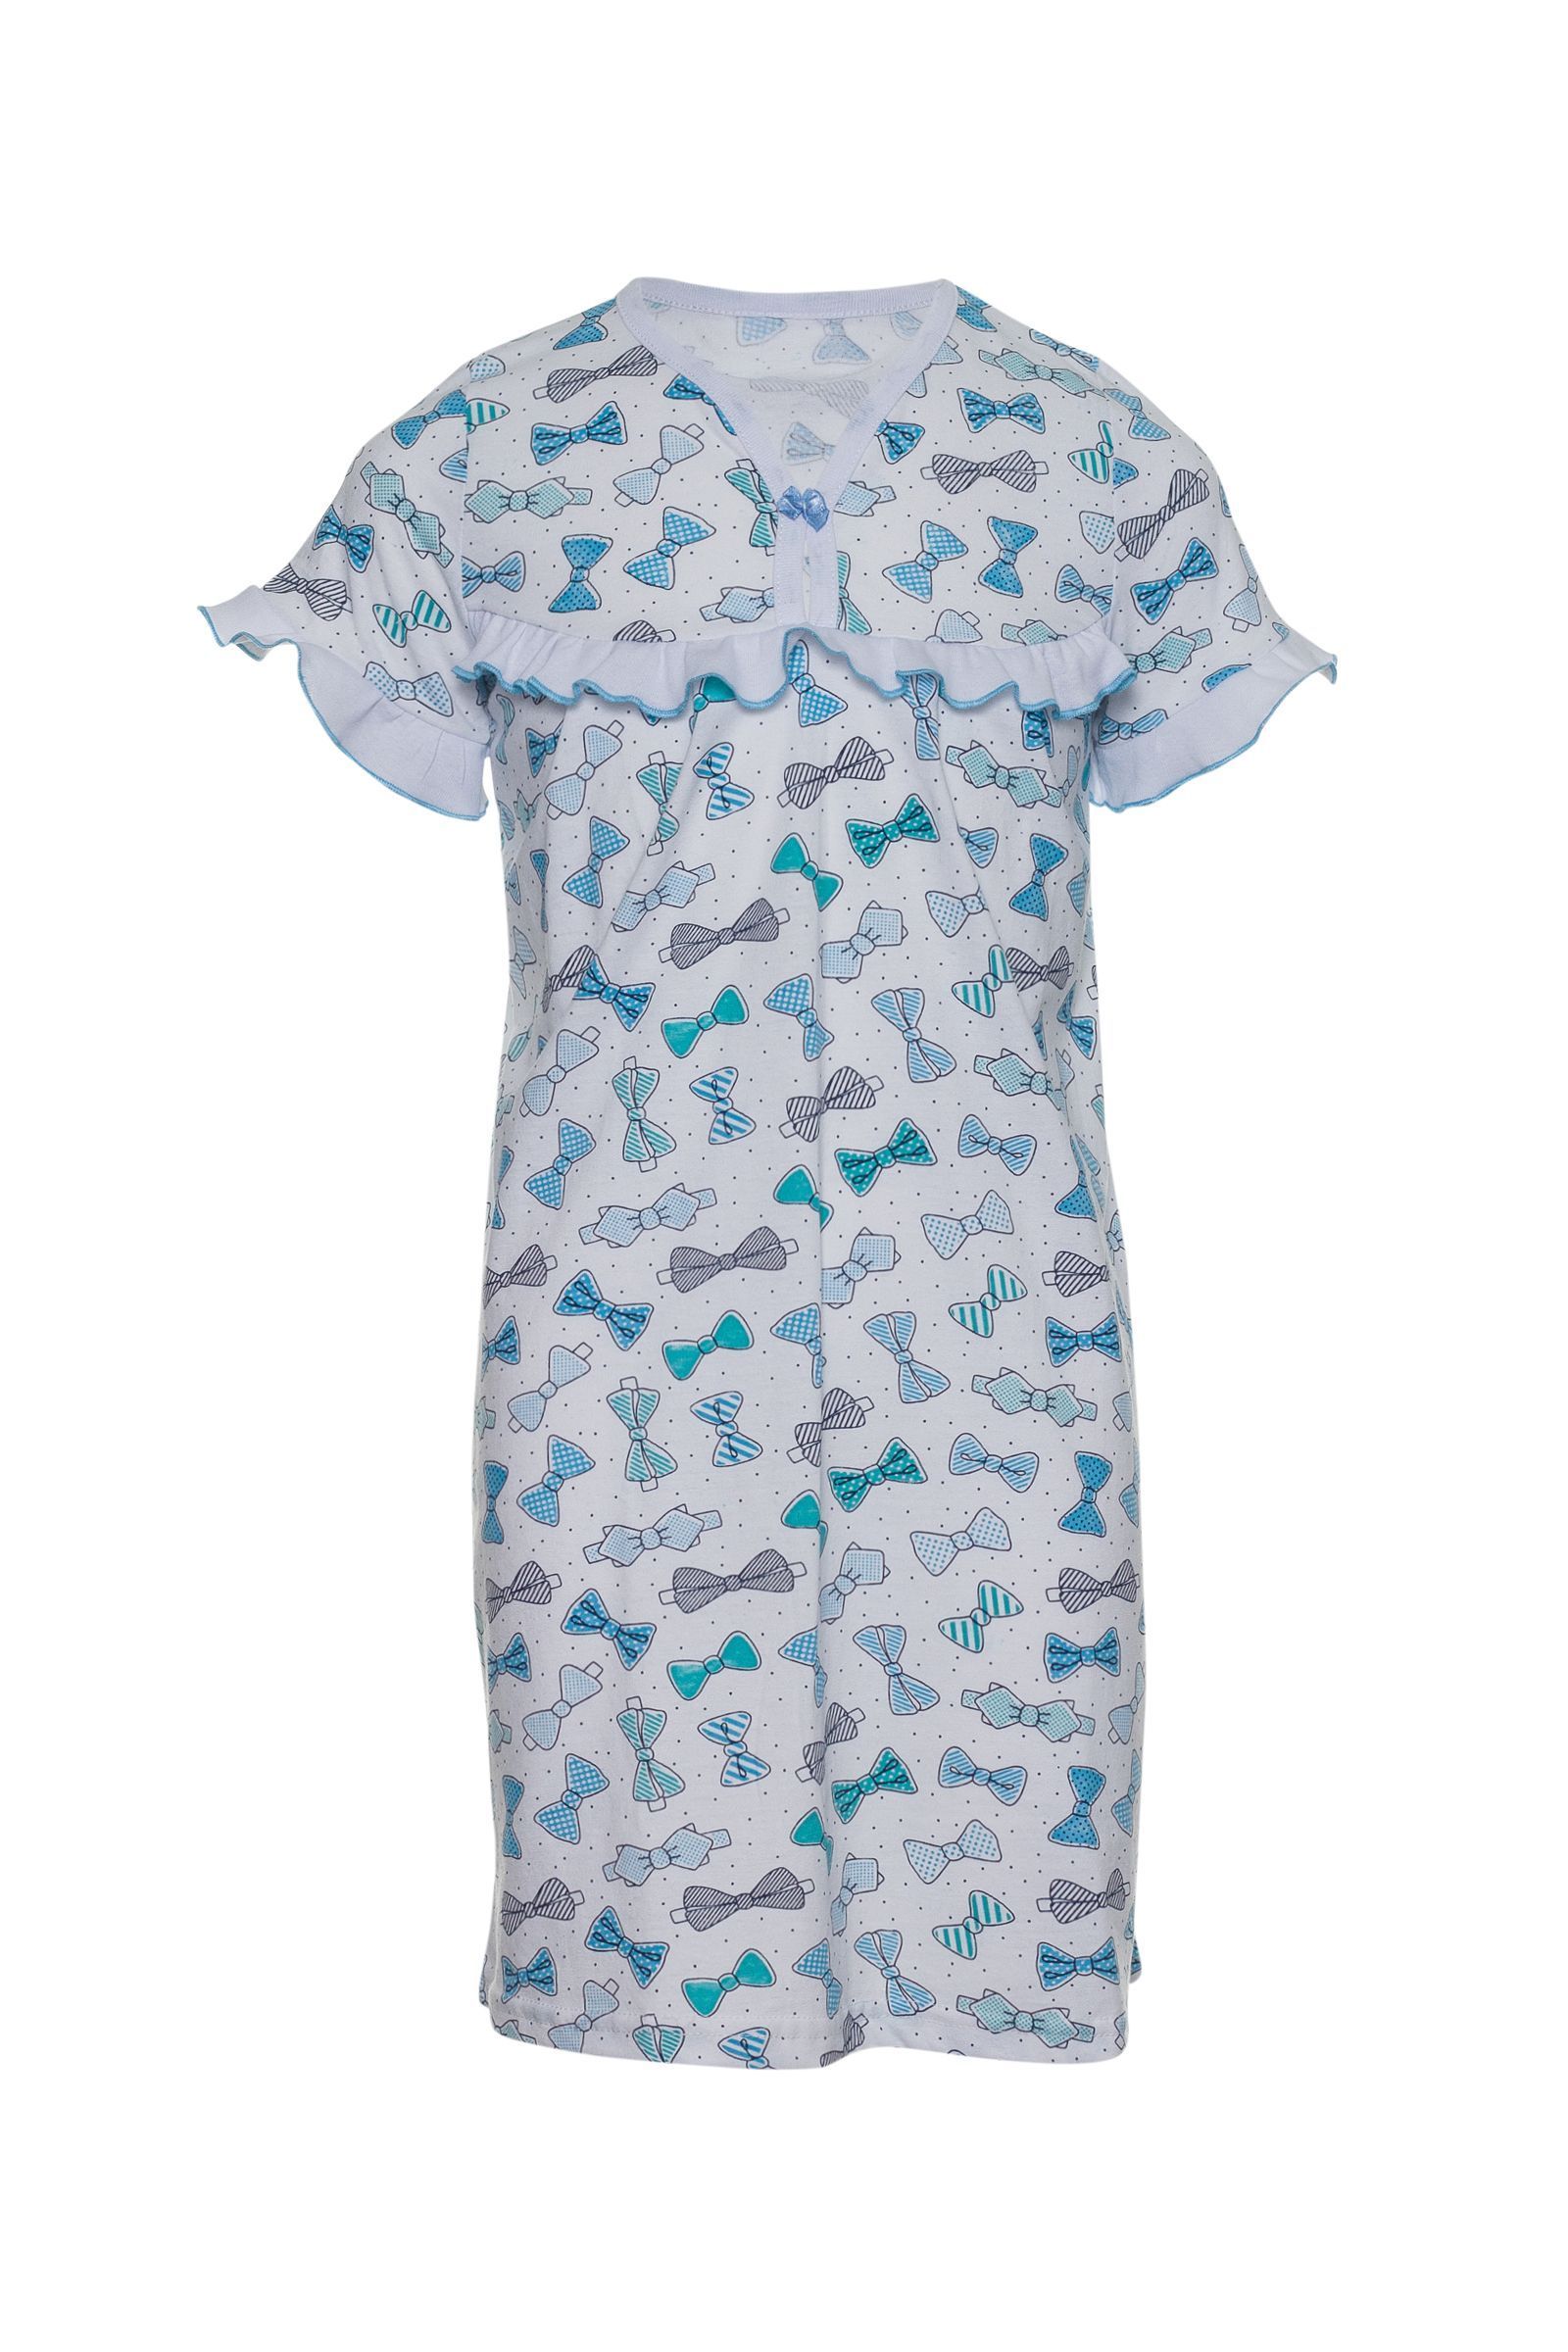 Ночная сорочка-СР02-68 оптом от производителя детской одежды 'Алёна'